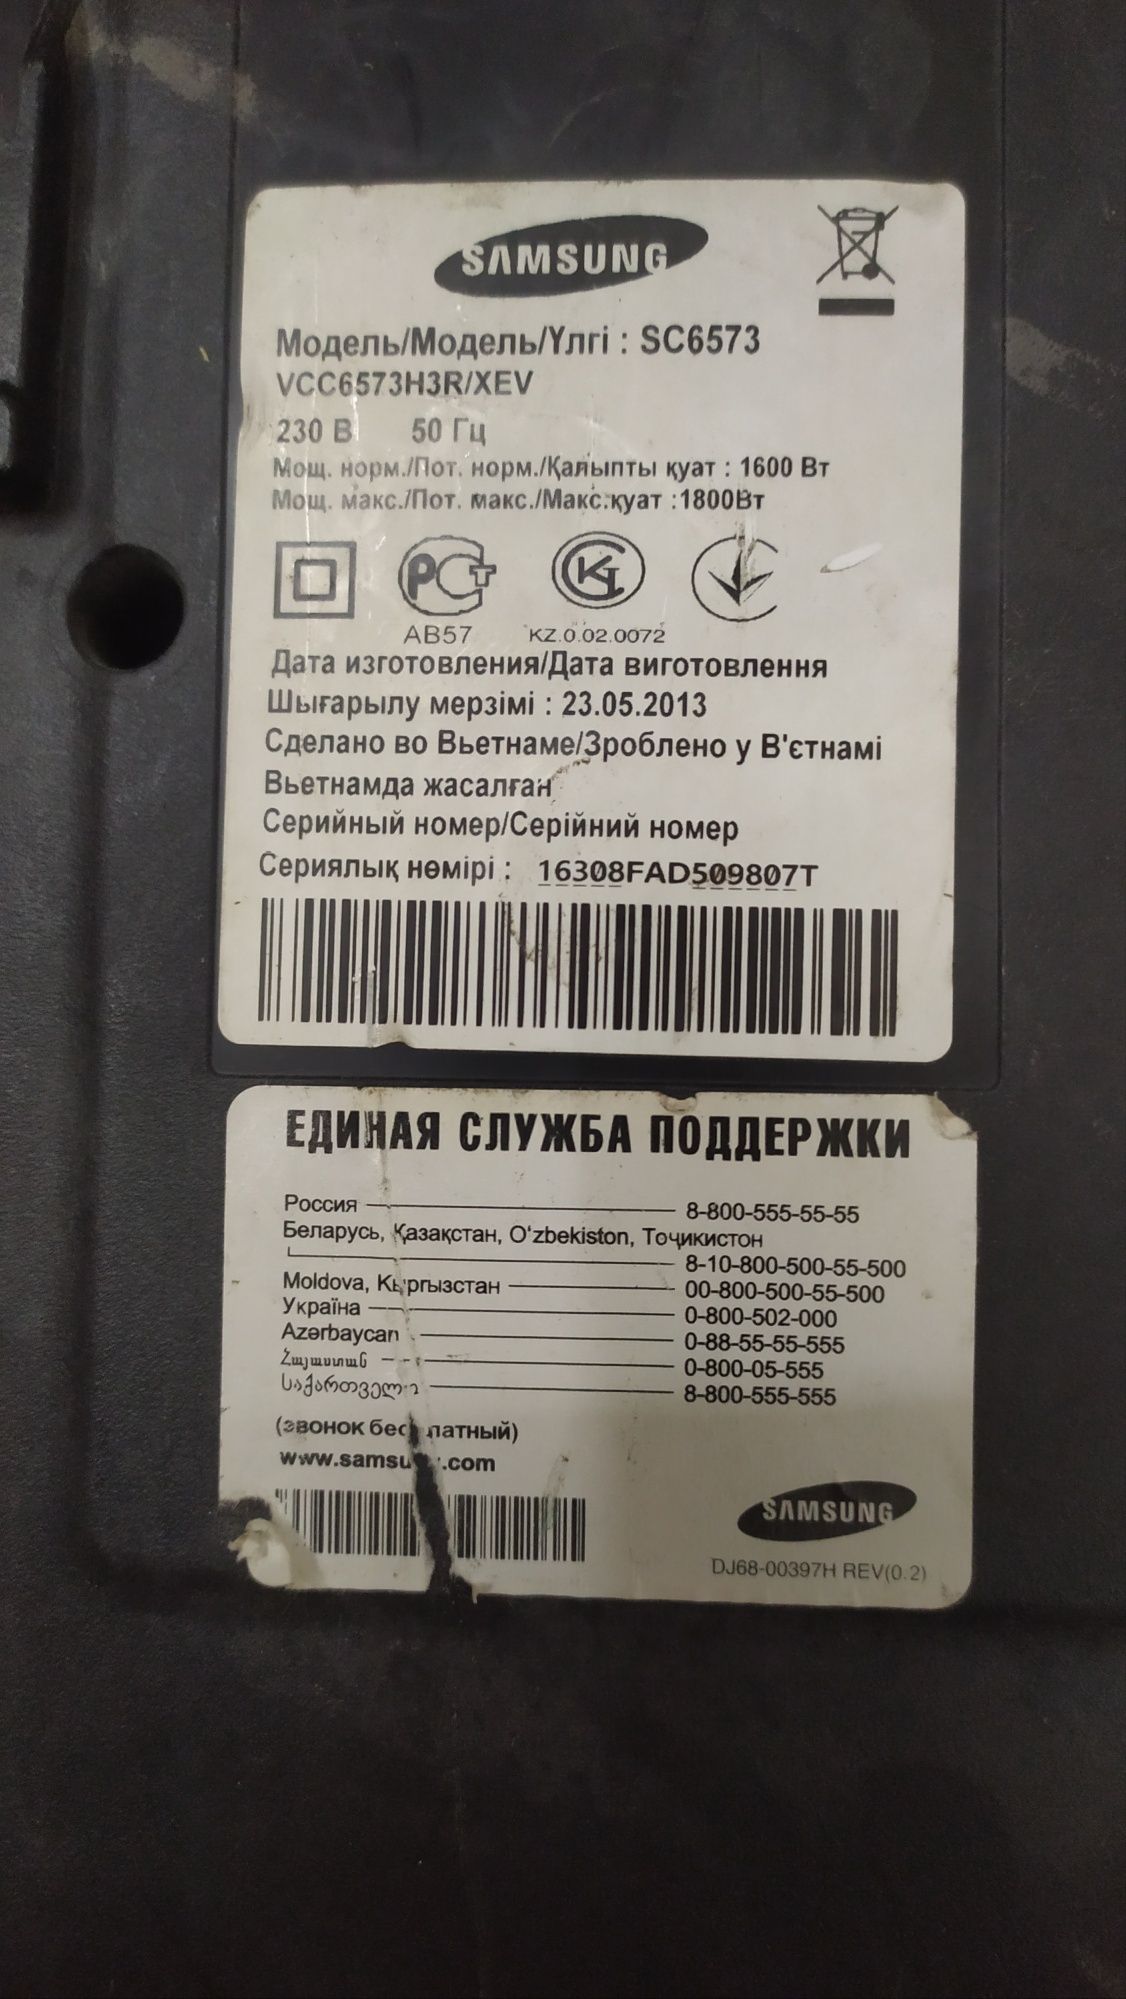 Корпуса от пылесосов Samsung SC4520 и SC6573